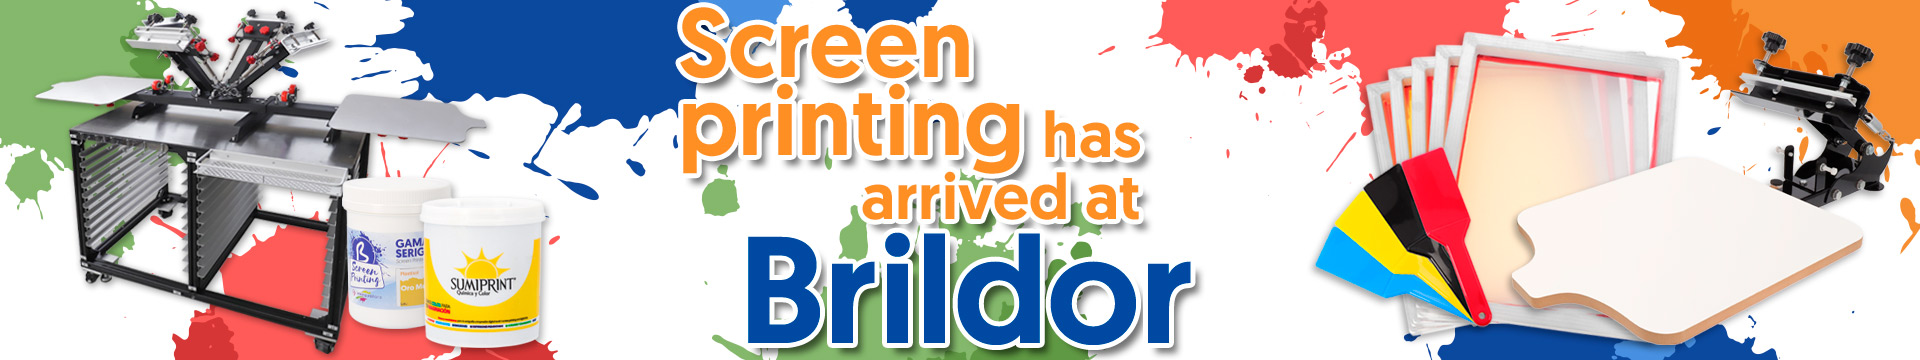 Screen printing has arrived at Brildor